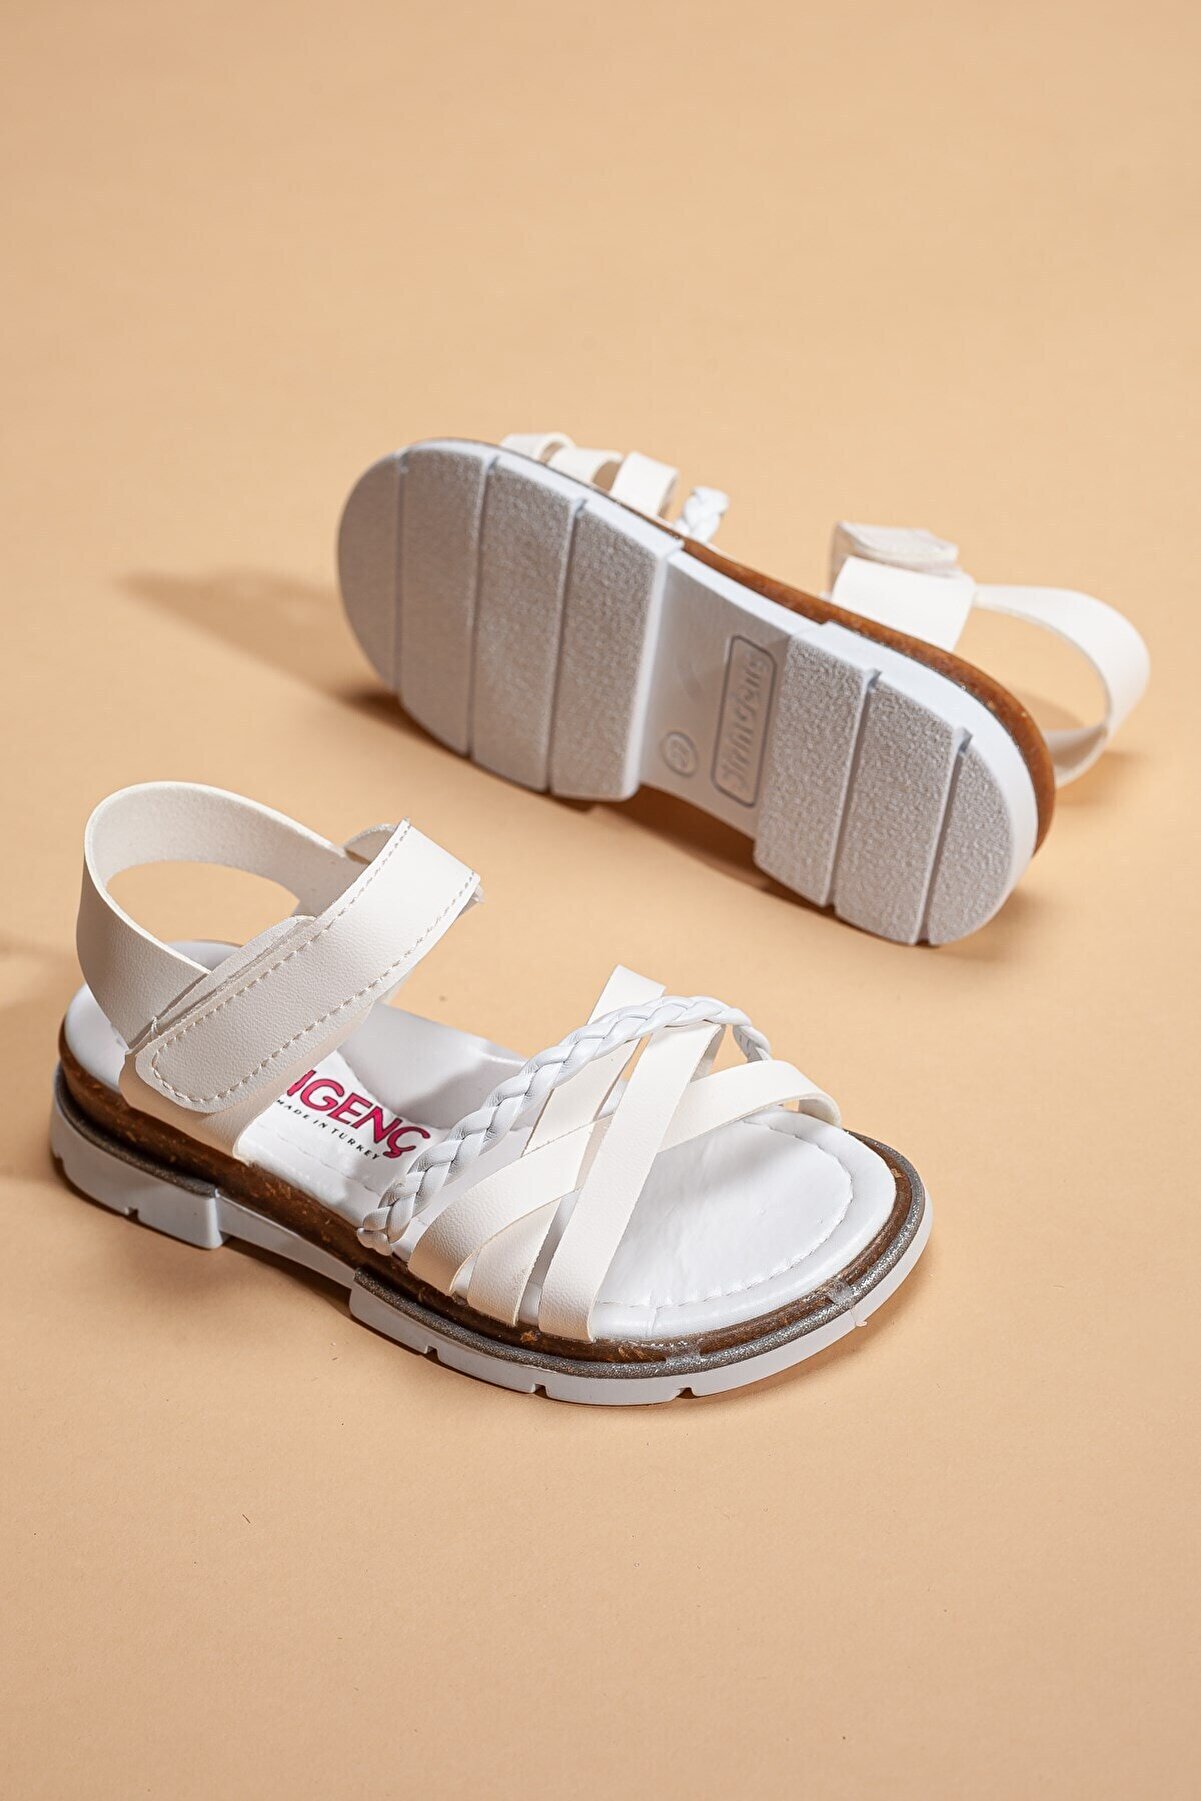 Dilimler Ayakkabı Şirin Genç Ortopedic Örgülü Kız Beyaz Patik Flet Sandalet (26-36 NUMARA).